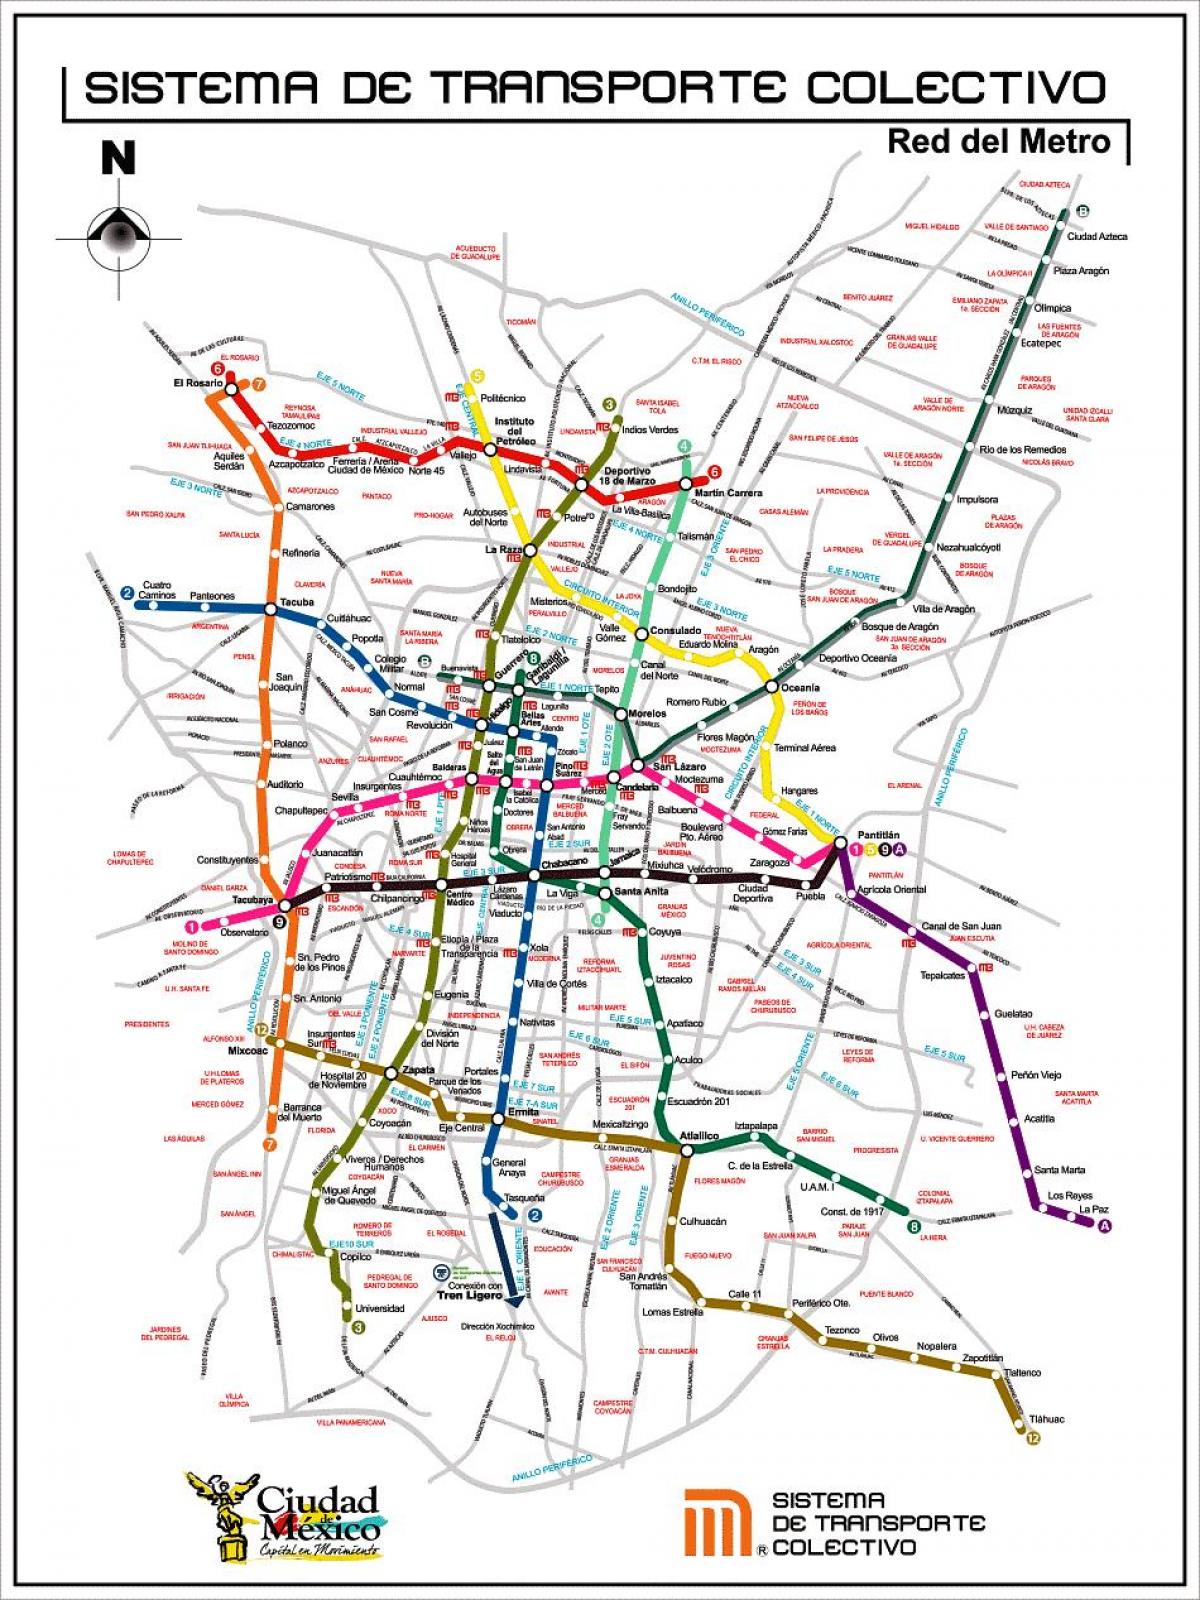 Karte von Mexico City transit